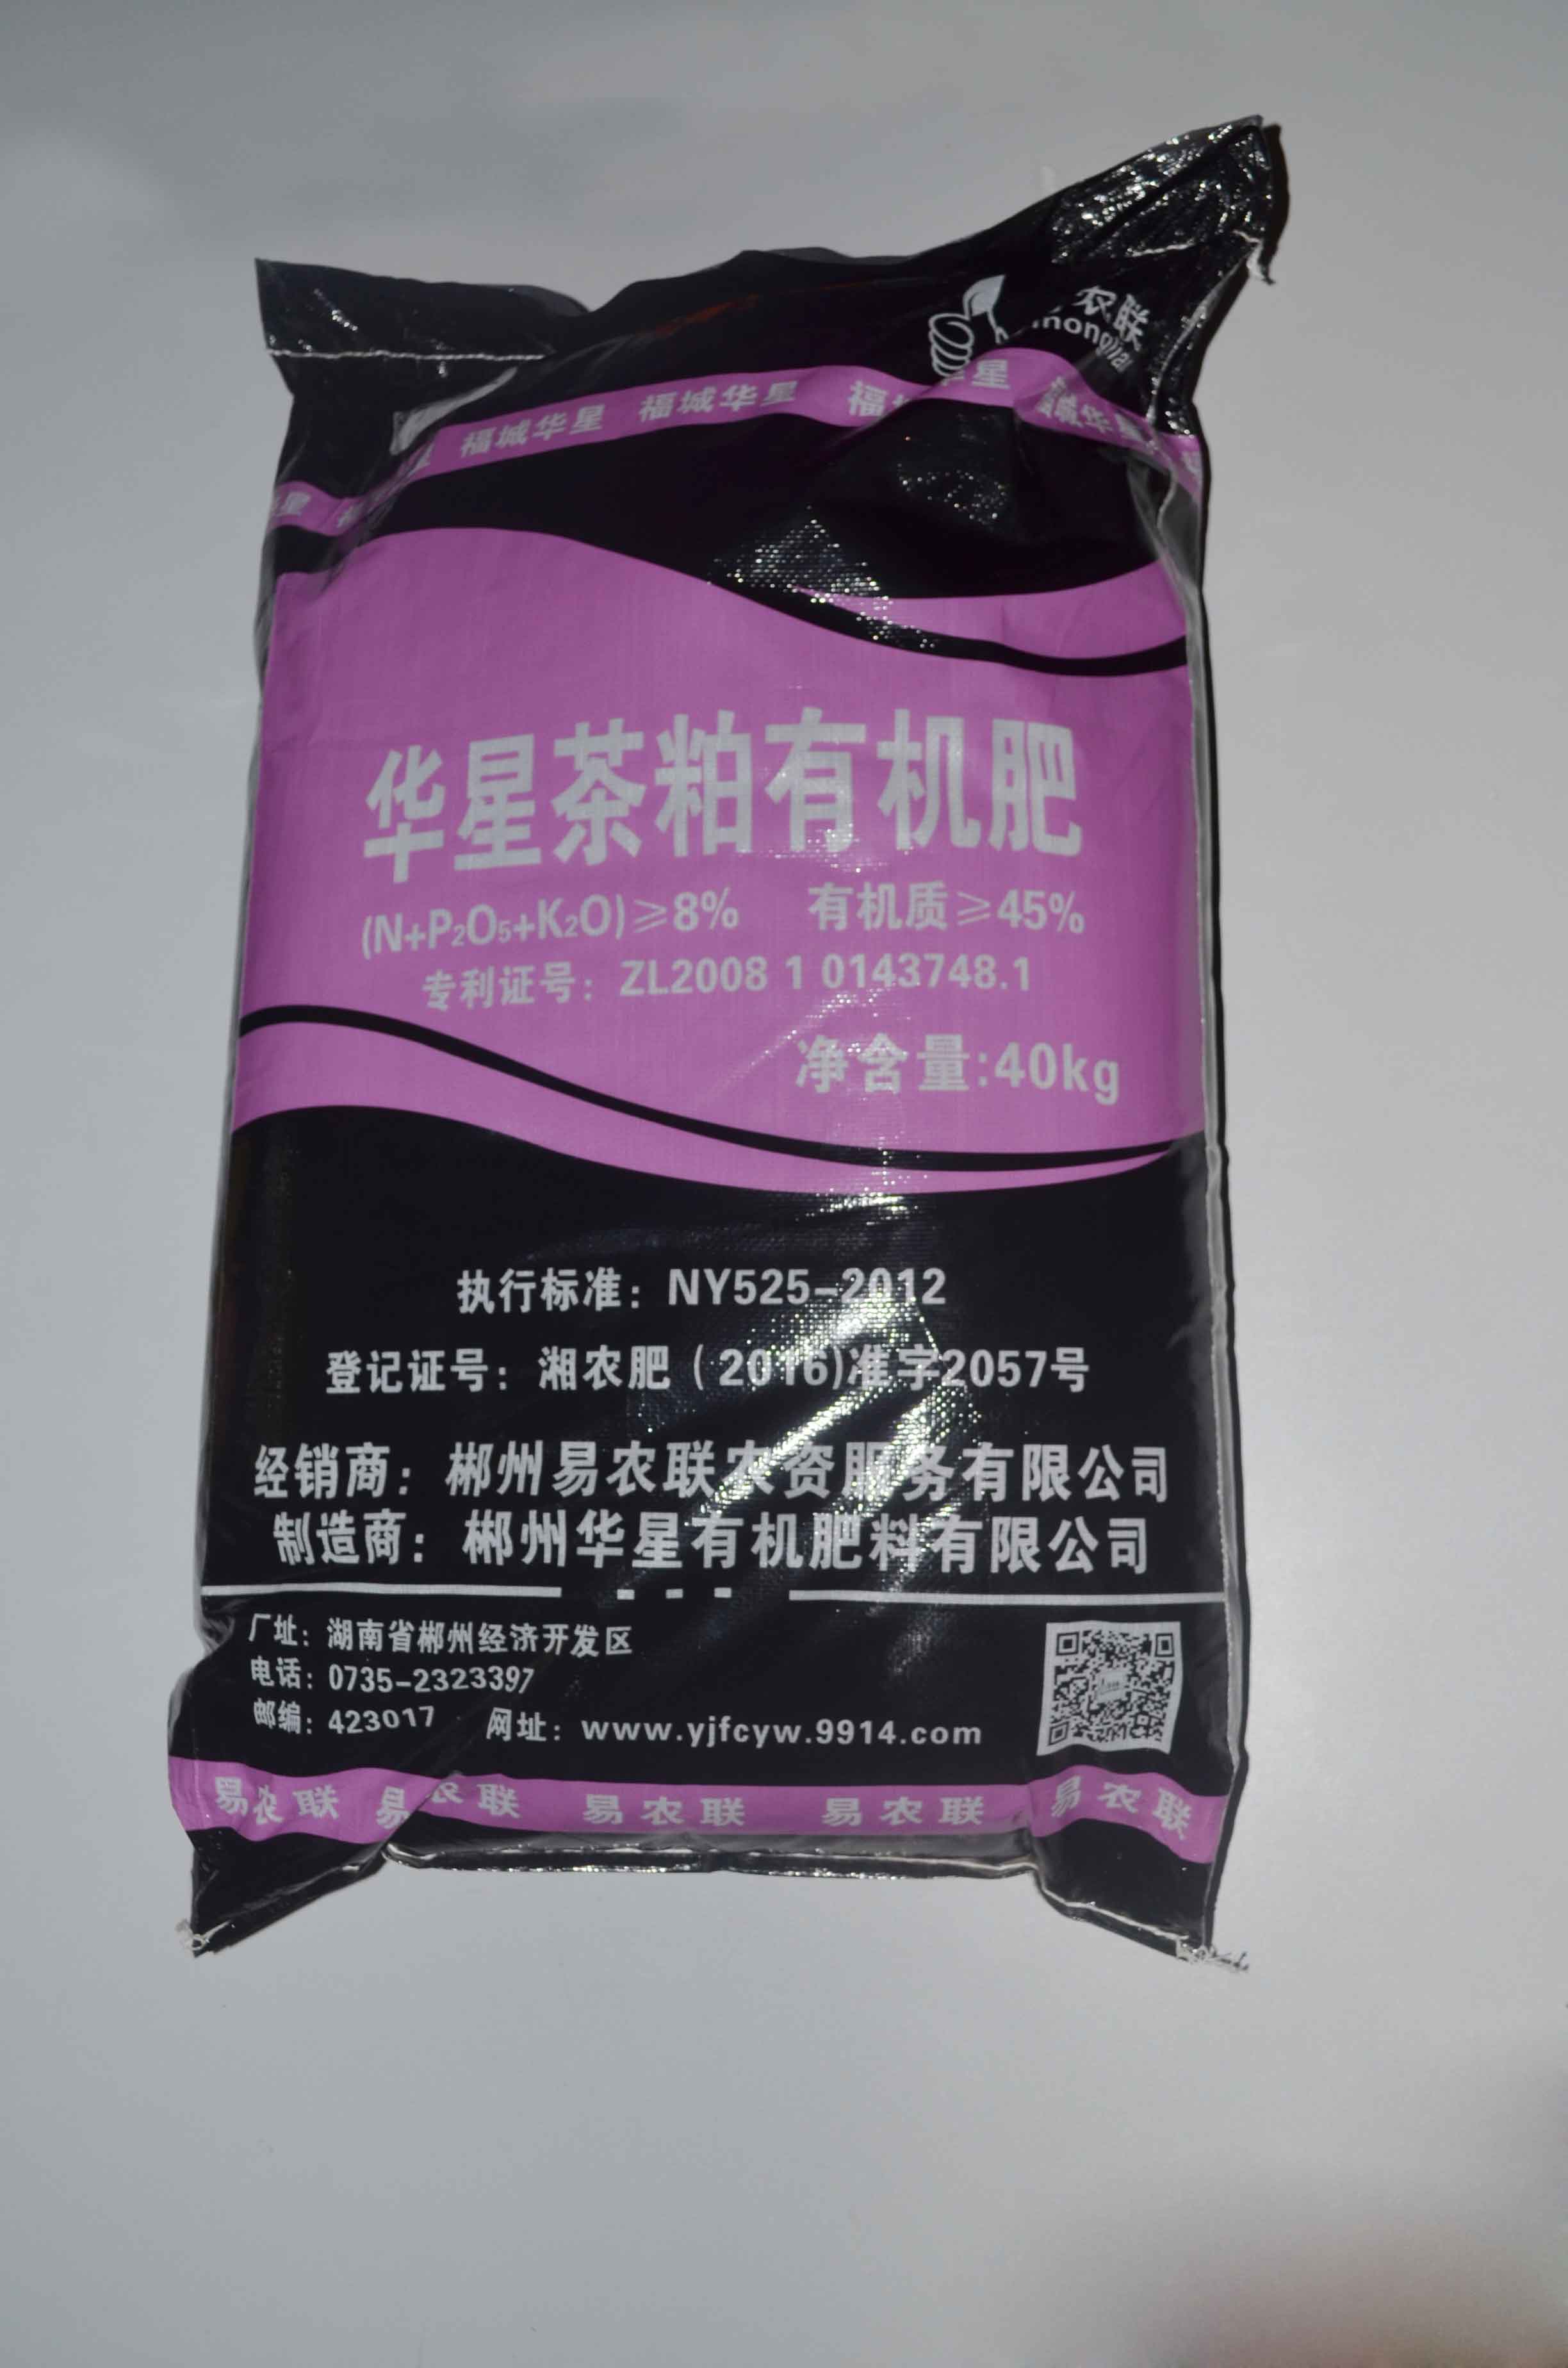 易农联5 粉状优质**肥 提高产品品质